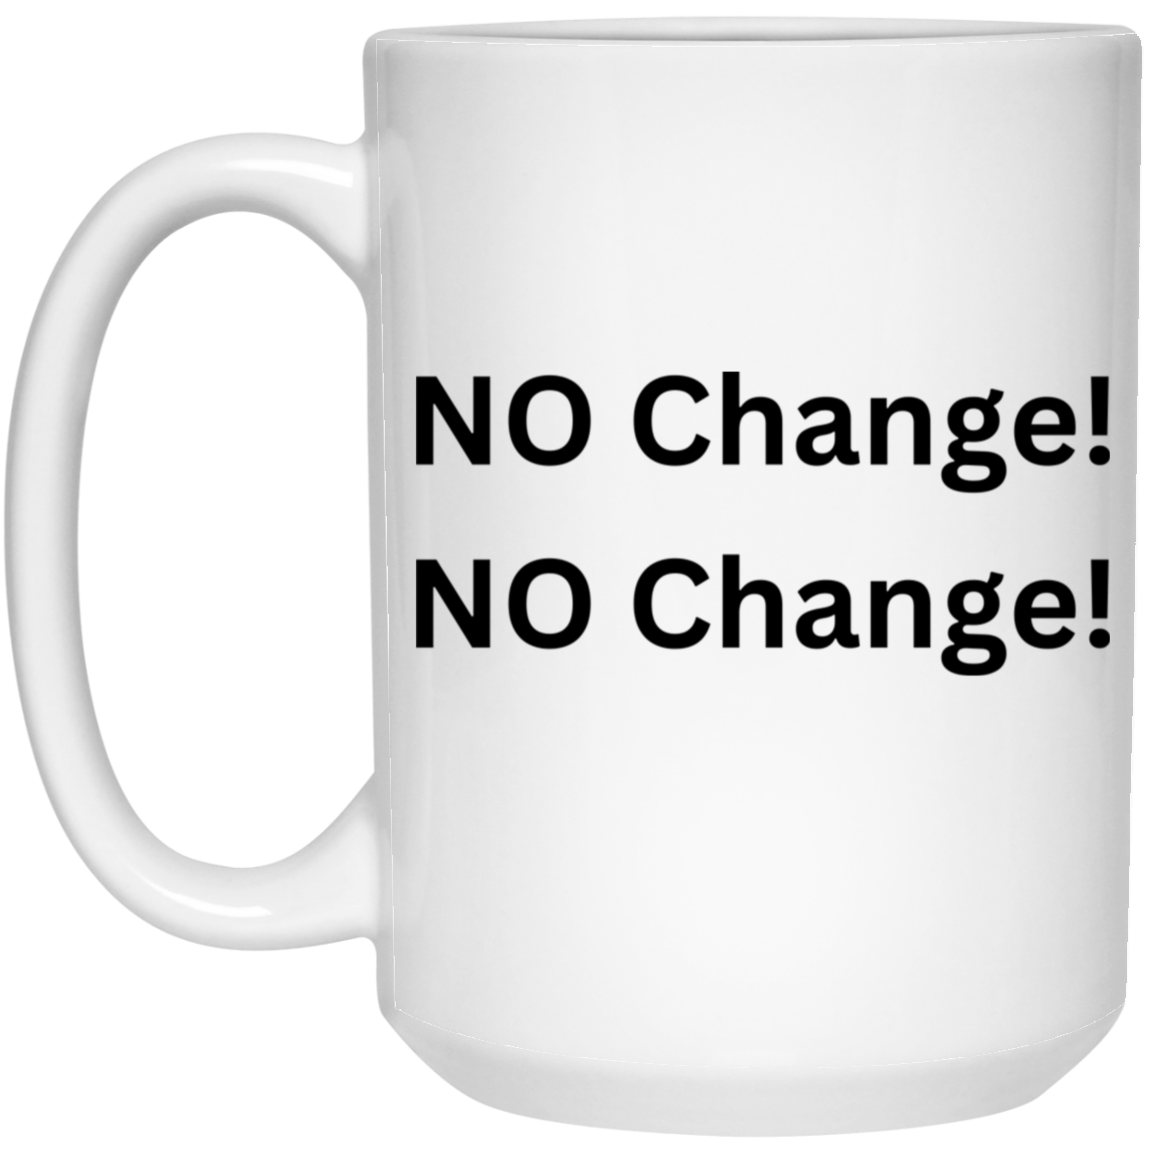 NO Change! 15oz. Mug